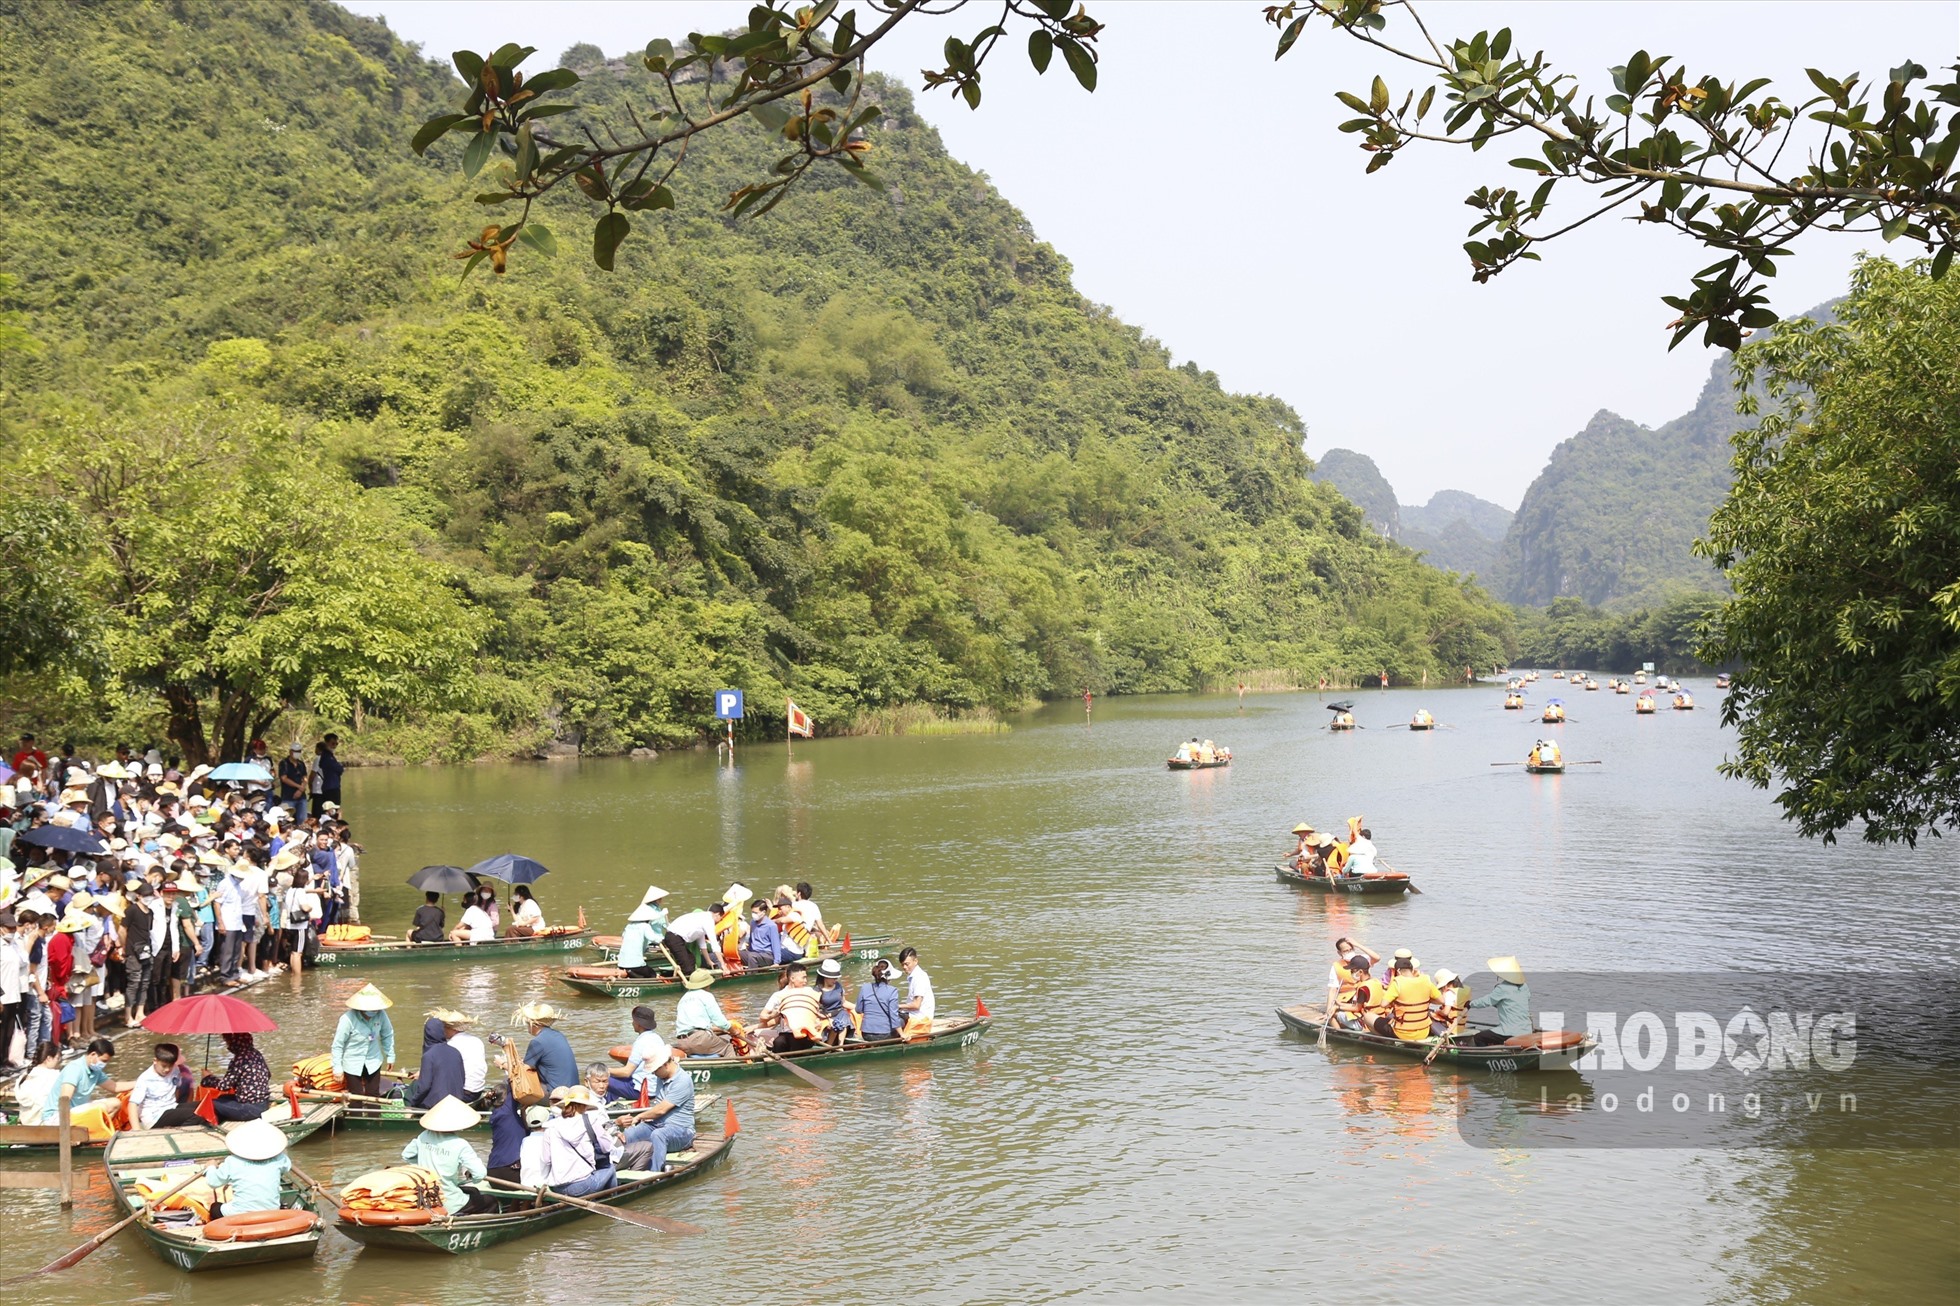 Khu du lịch sinh thái Tràng An là một trong những điểm có lượng khách đông nhất với